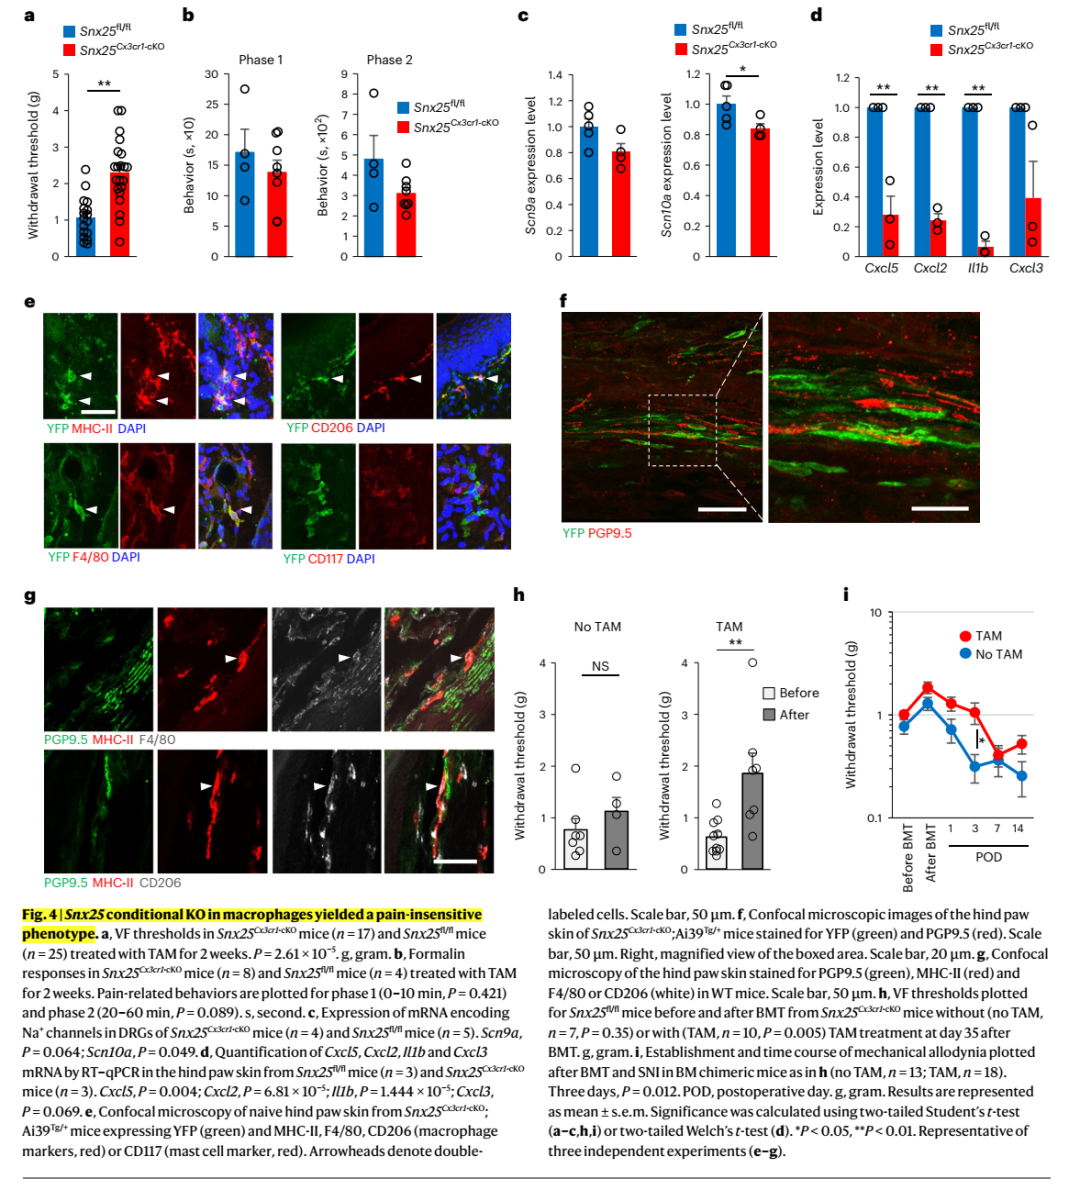 神经免疫交互调控痛觉敏感度：皮肤巨噬细胞SNX25通过调控<font color="red">NGF</font>的表达进而设定痛觉敏感度